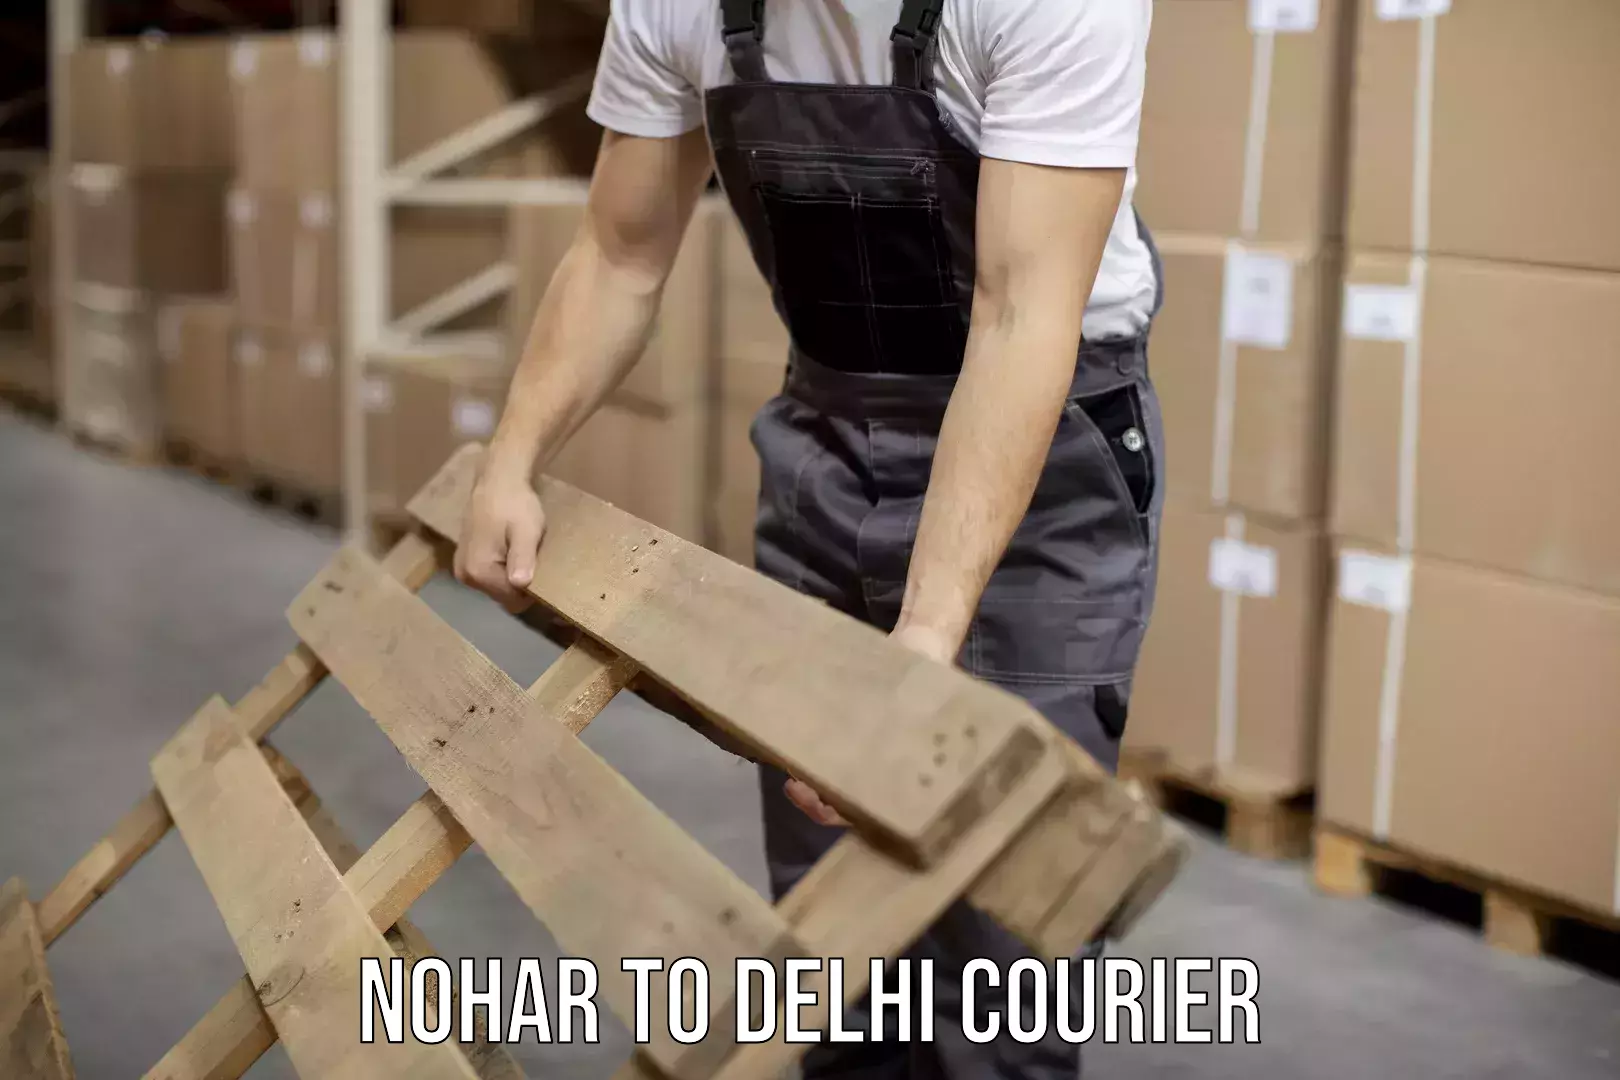 Global logistics network Nohar to Delhi